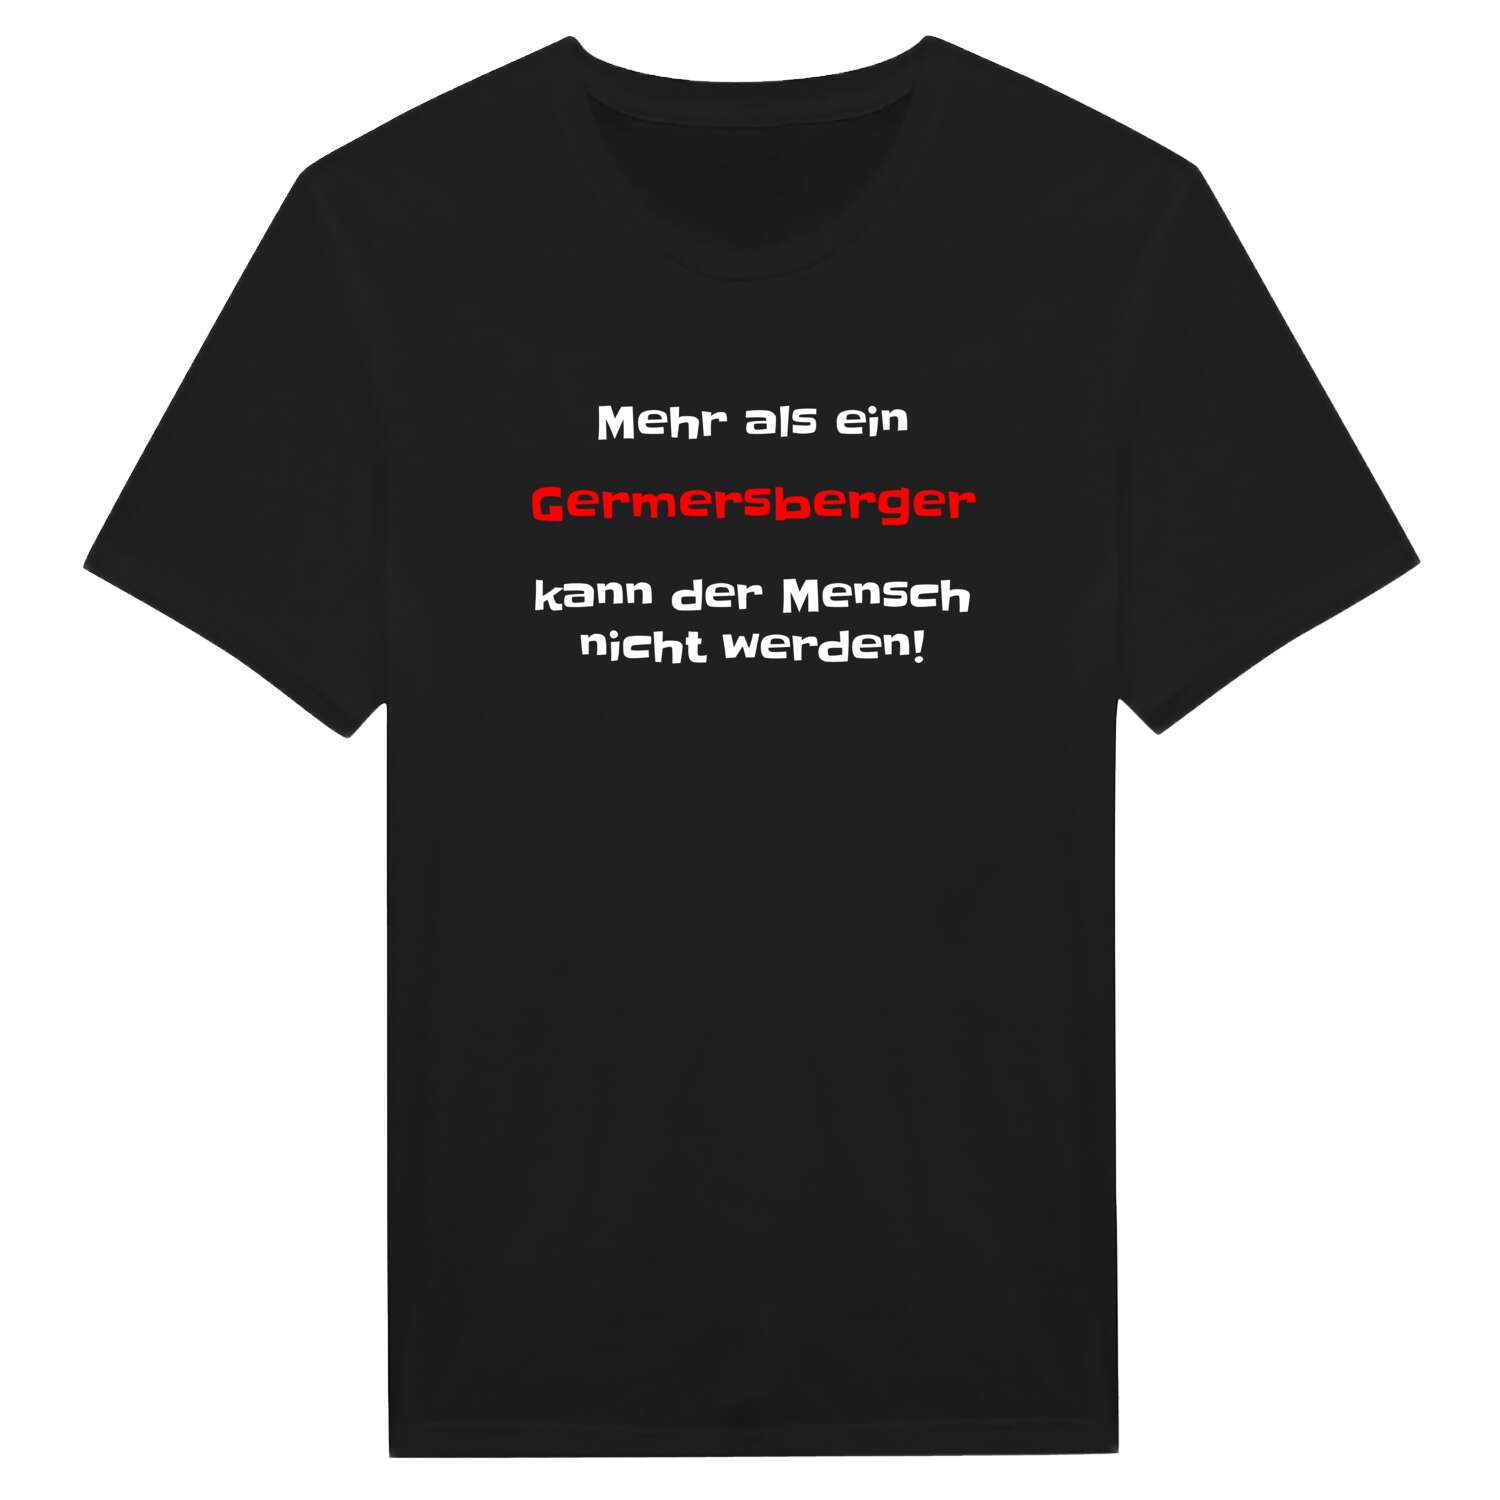 Germersberg T-Shirt »Mehr als ein«